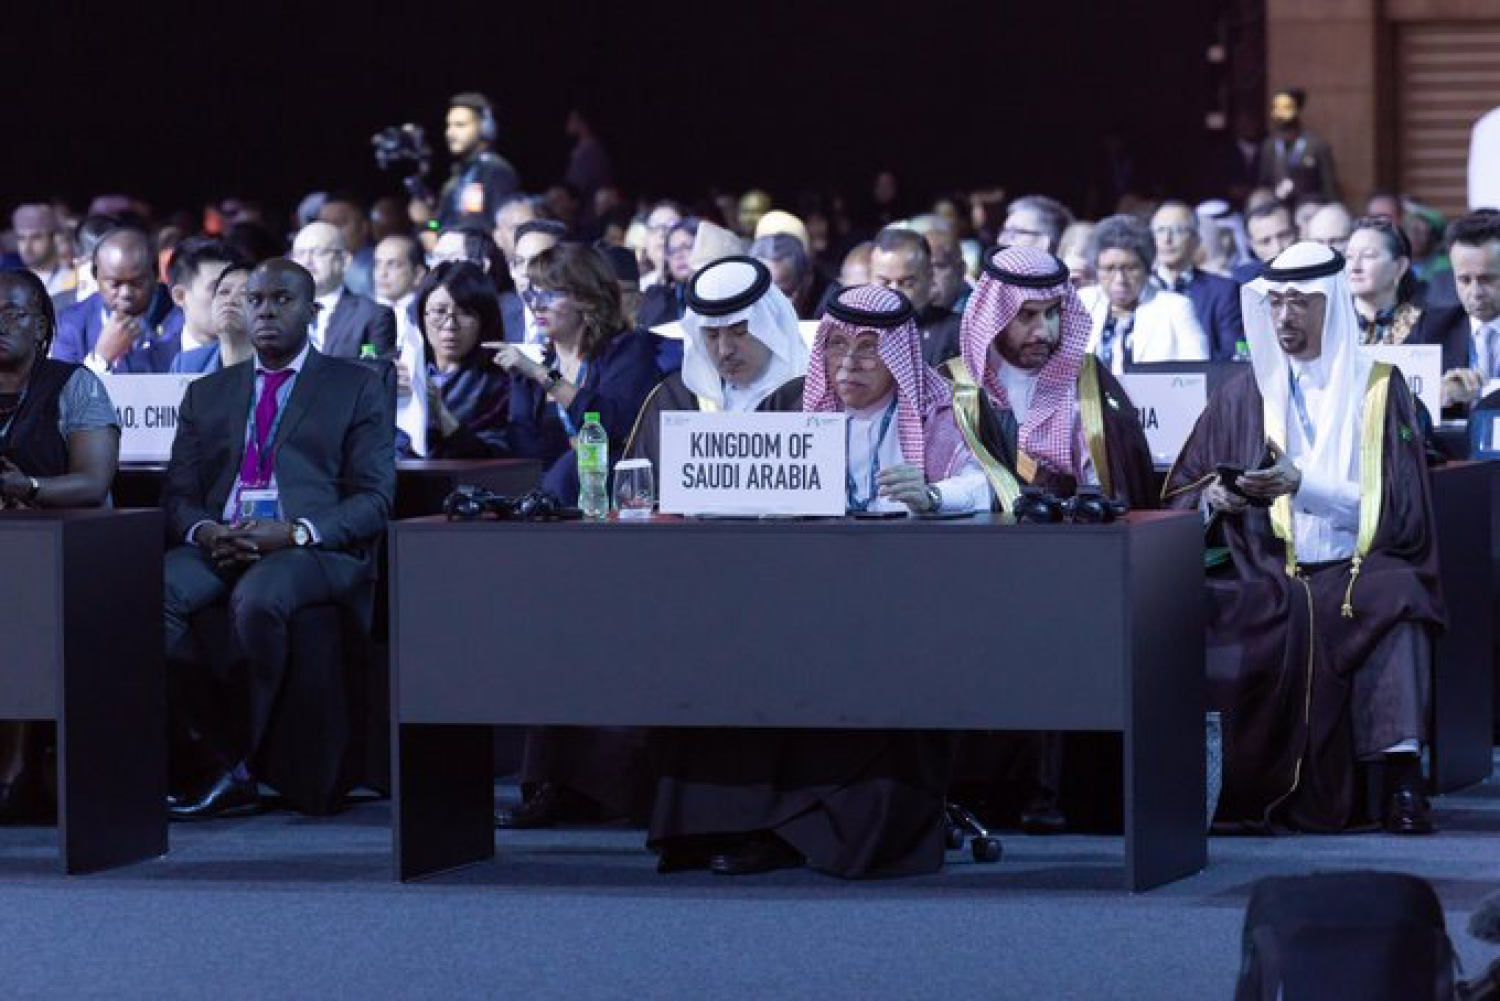 الدكتور ماجد القصبي خلال مشاركته في الاجتماع الوزاري الثالث عشر لمنظمة التجارة العالمية في أبوظبي (الشرق الأوسط)